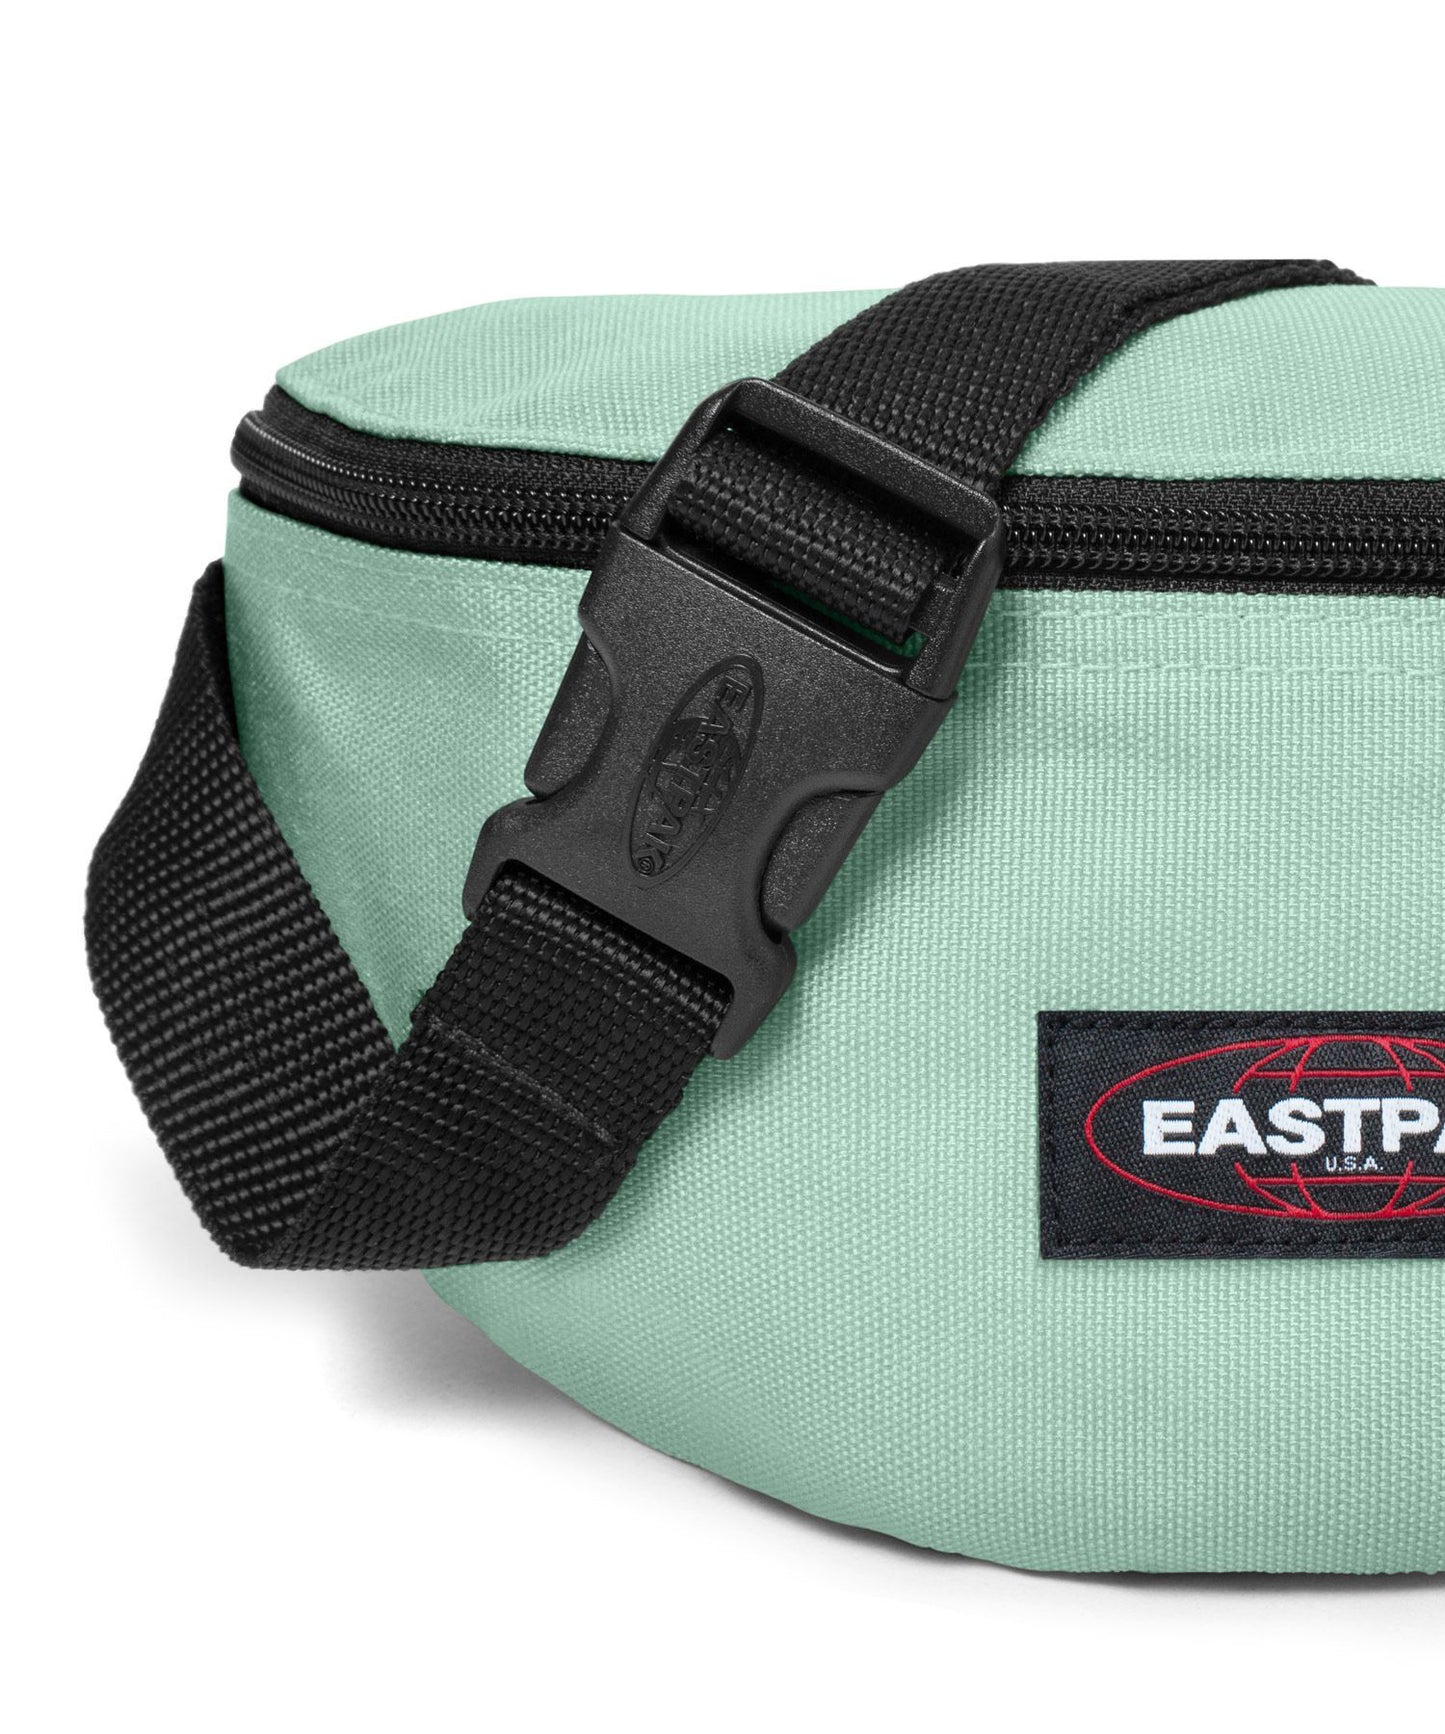 eastpak-rinonera-springer-calm-green-color verde-bolsillo trasero-cierre cremallera-producto impermeable y vegano..